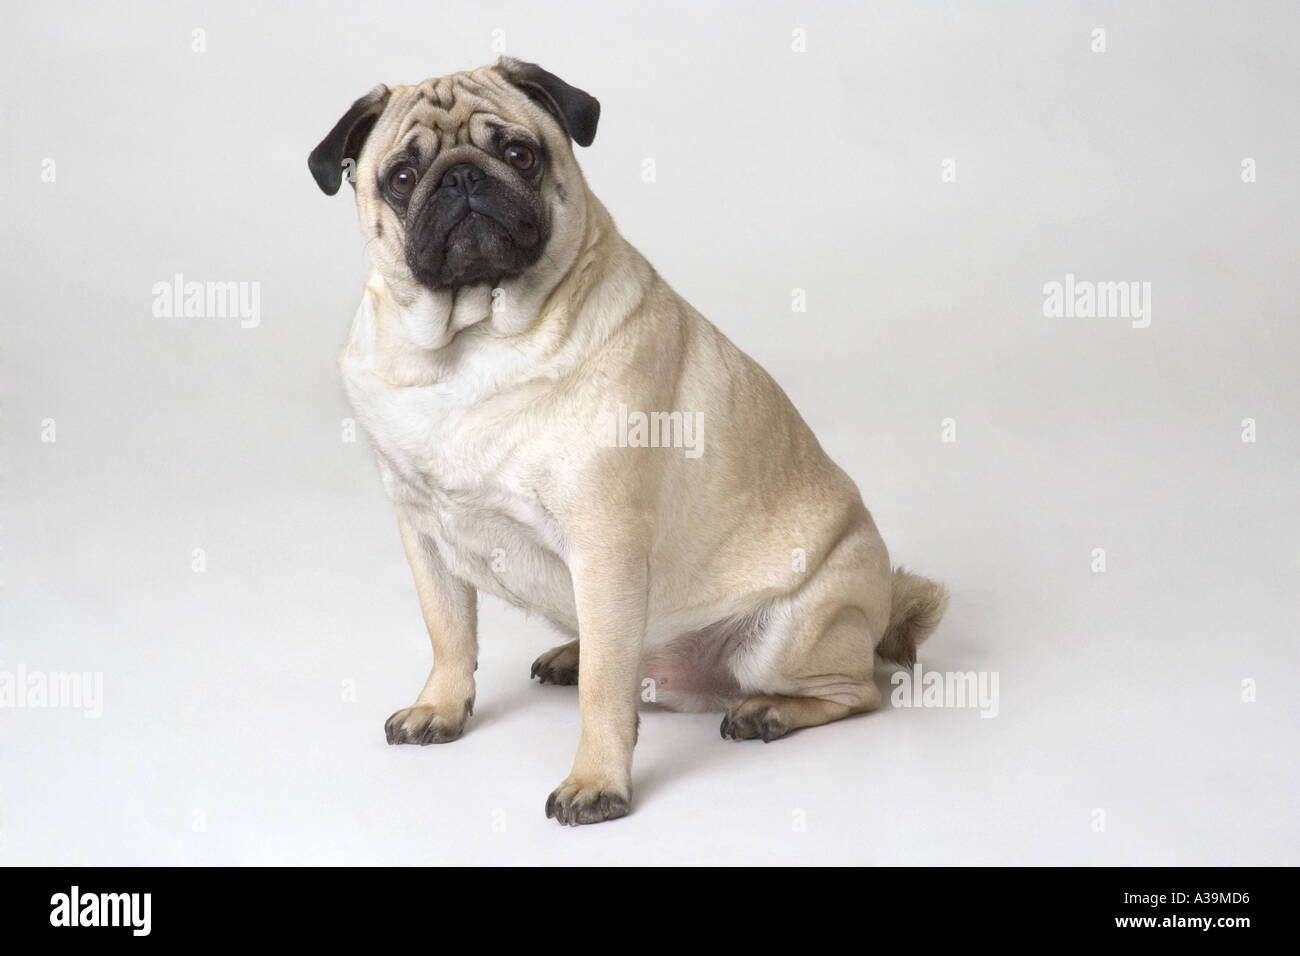 Portrait of sitting pug dog Stock Photo